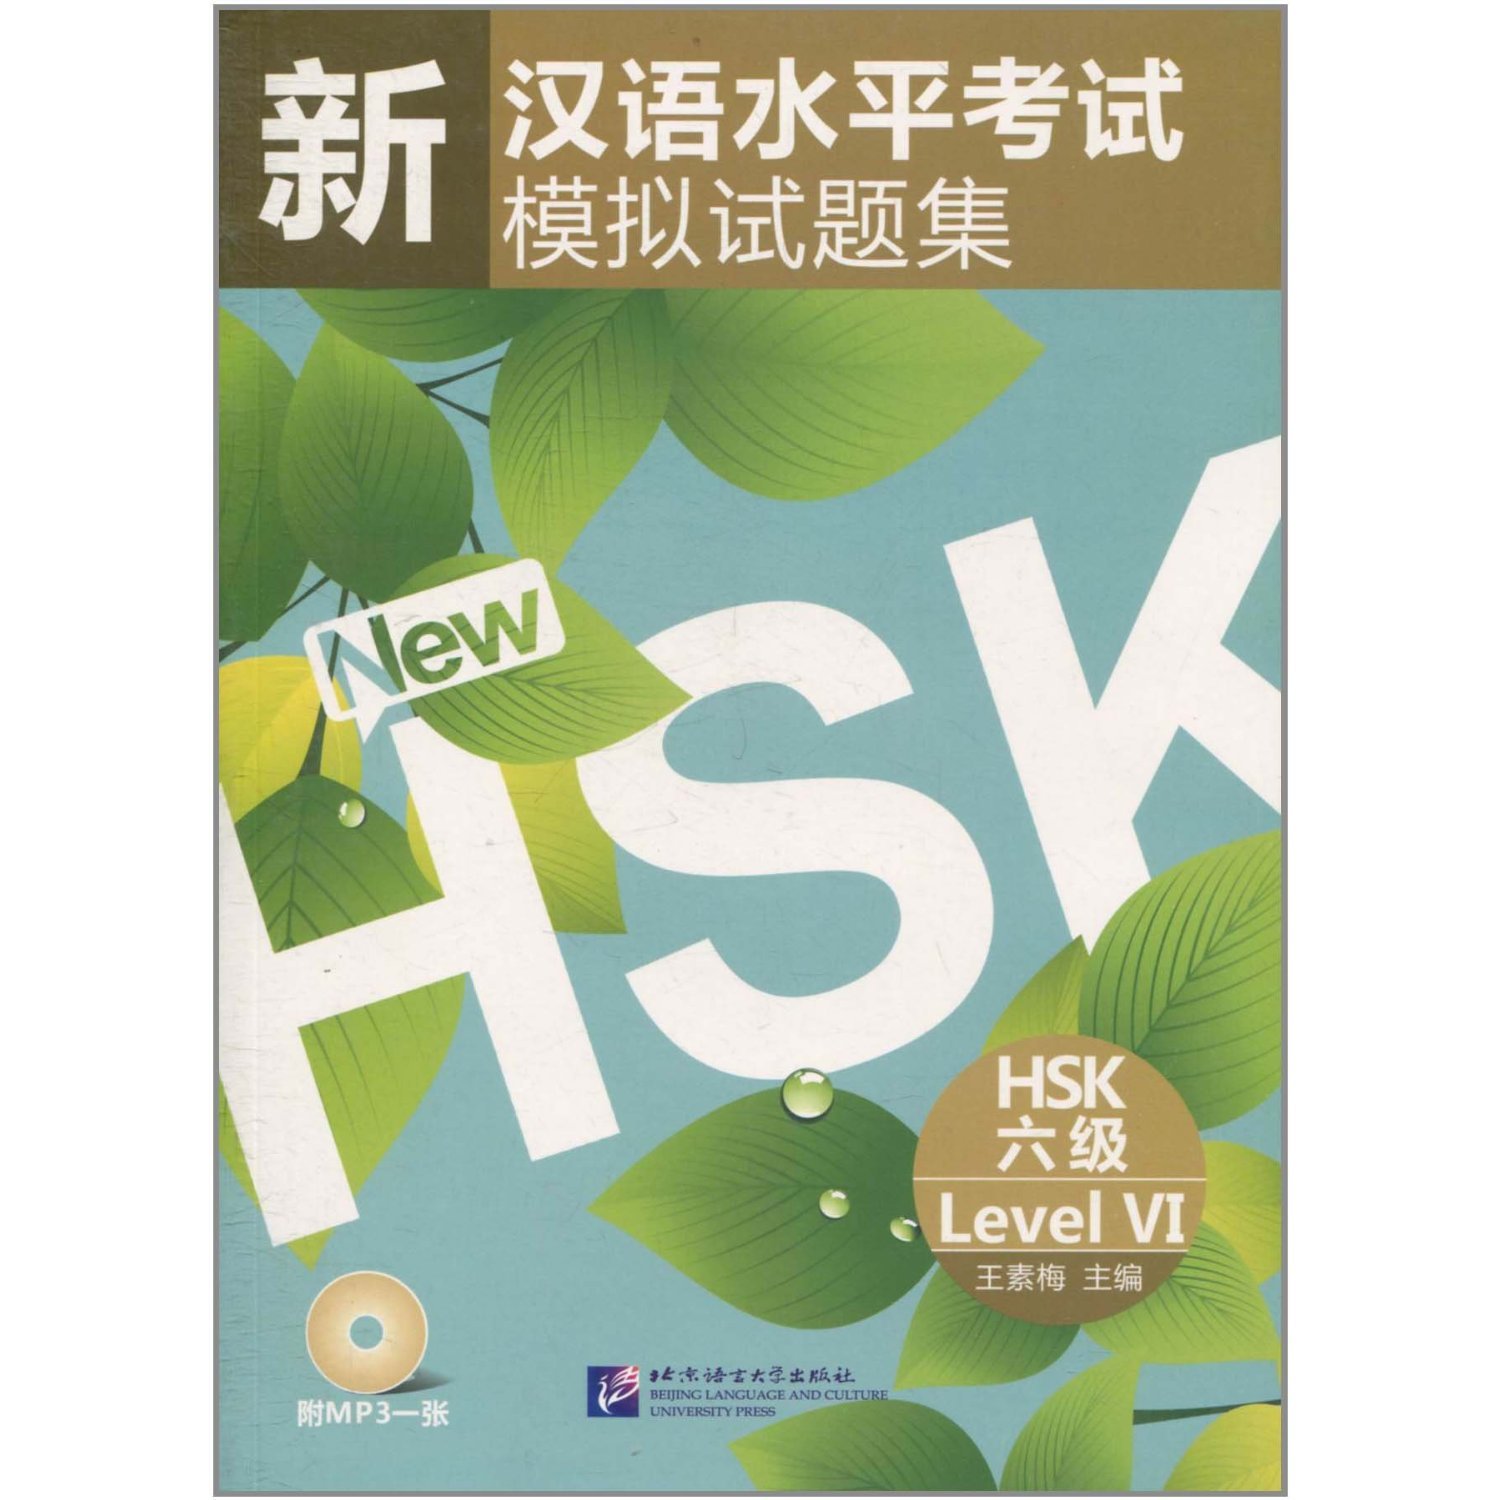 หนังสือเรียนภาษาจีนเตรียมสอบ HSK ระดับ 6 พร้อม MP3